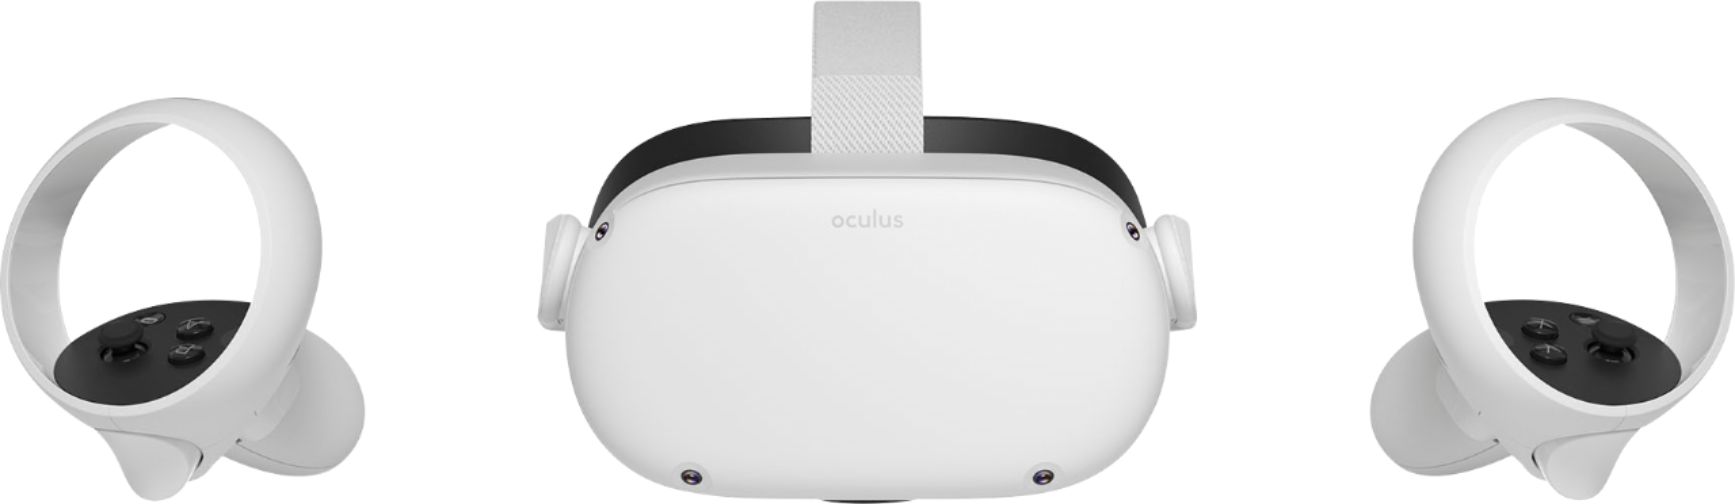 oculus quest 64gb best buy